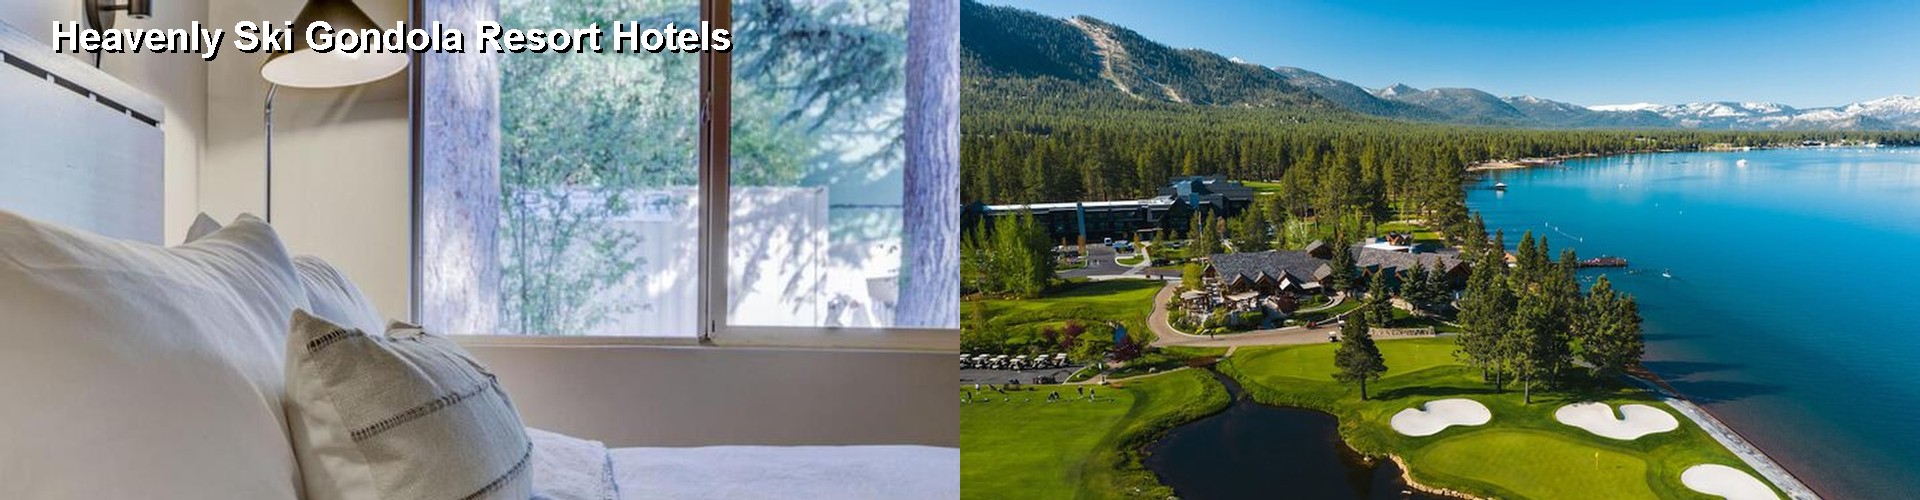 5 Best Hotels near Heavenly Ski Gondola Resort